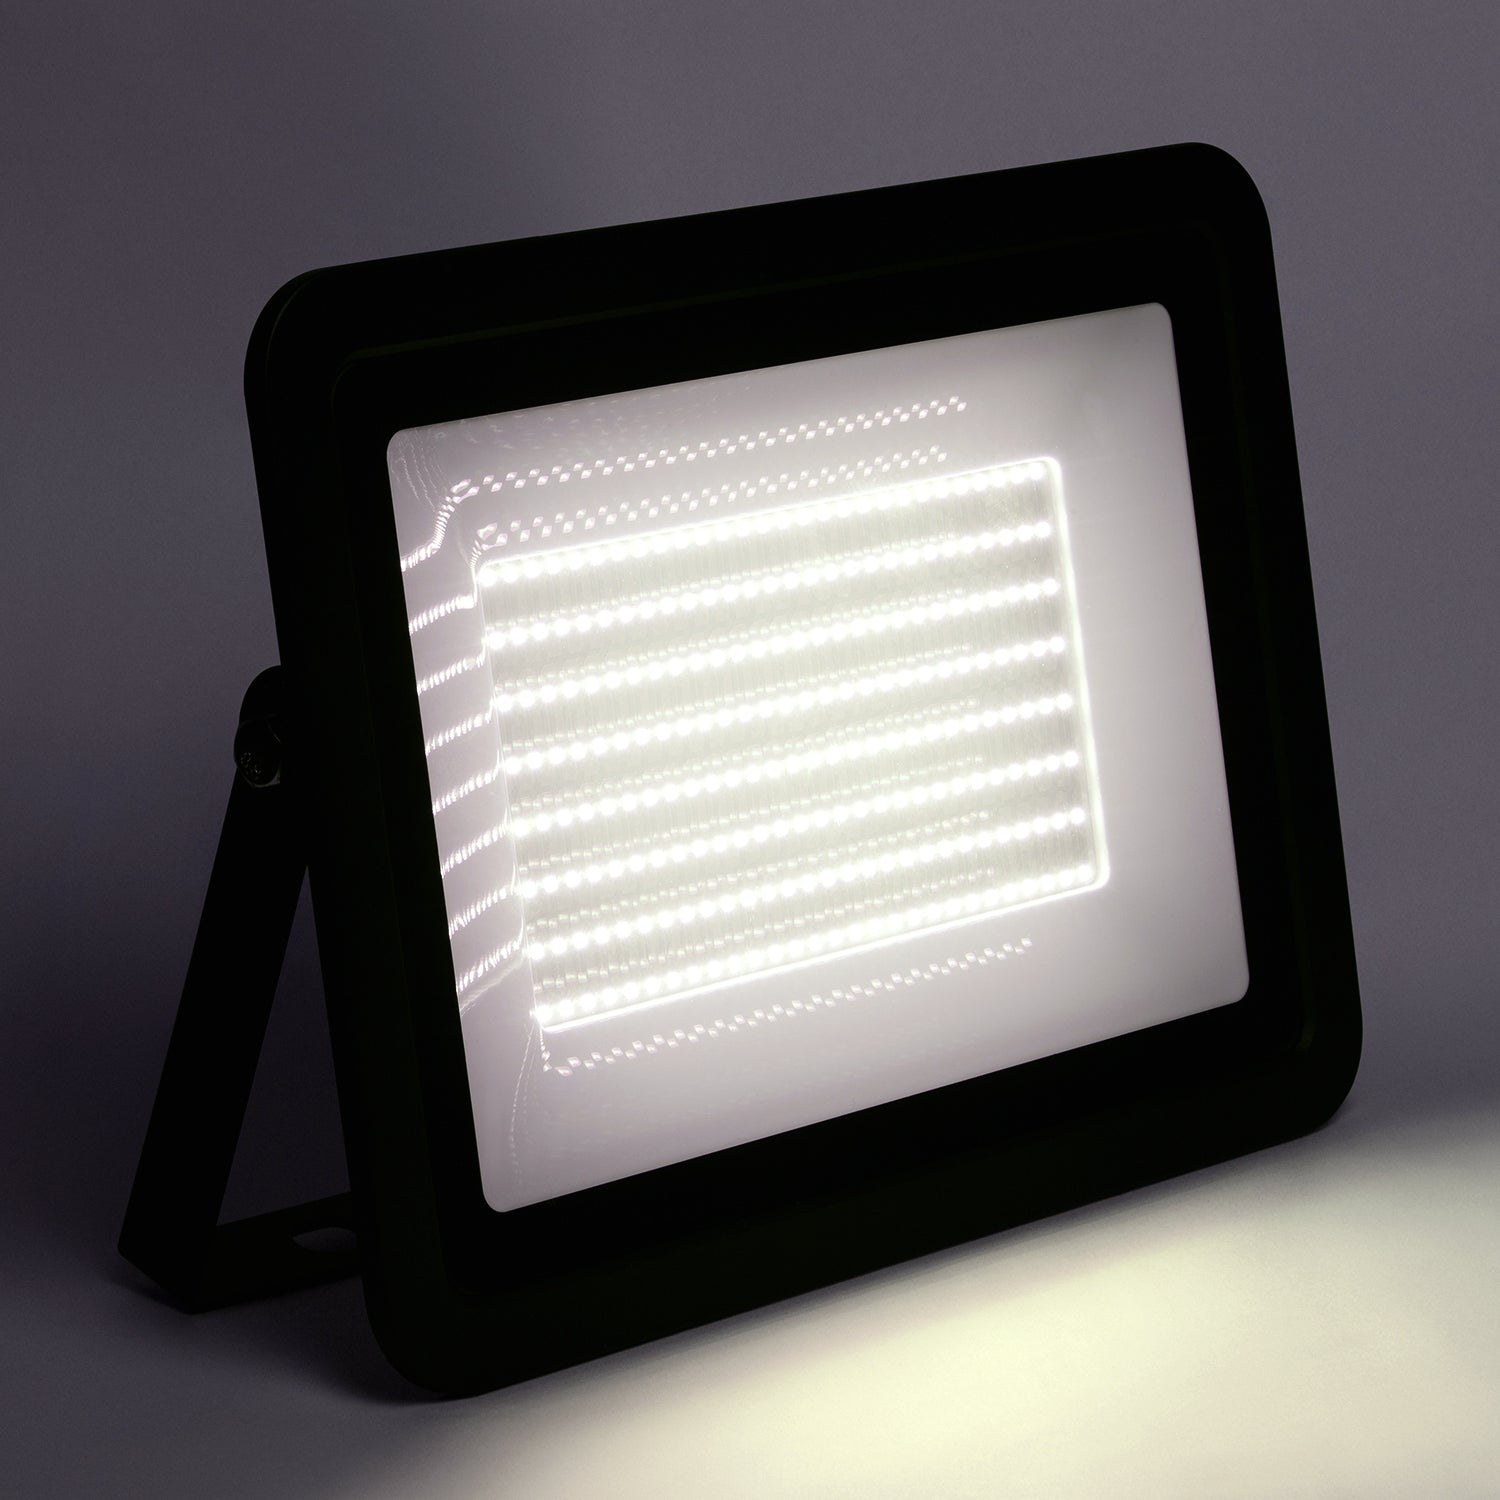 Reflector LED, IP 65, Uso exterior, 200 W, 18,000 lm, Alto desempeño, RL-36200.N